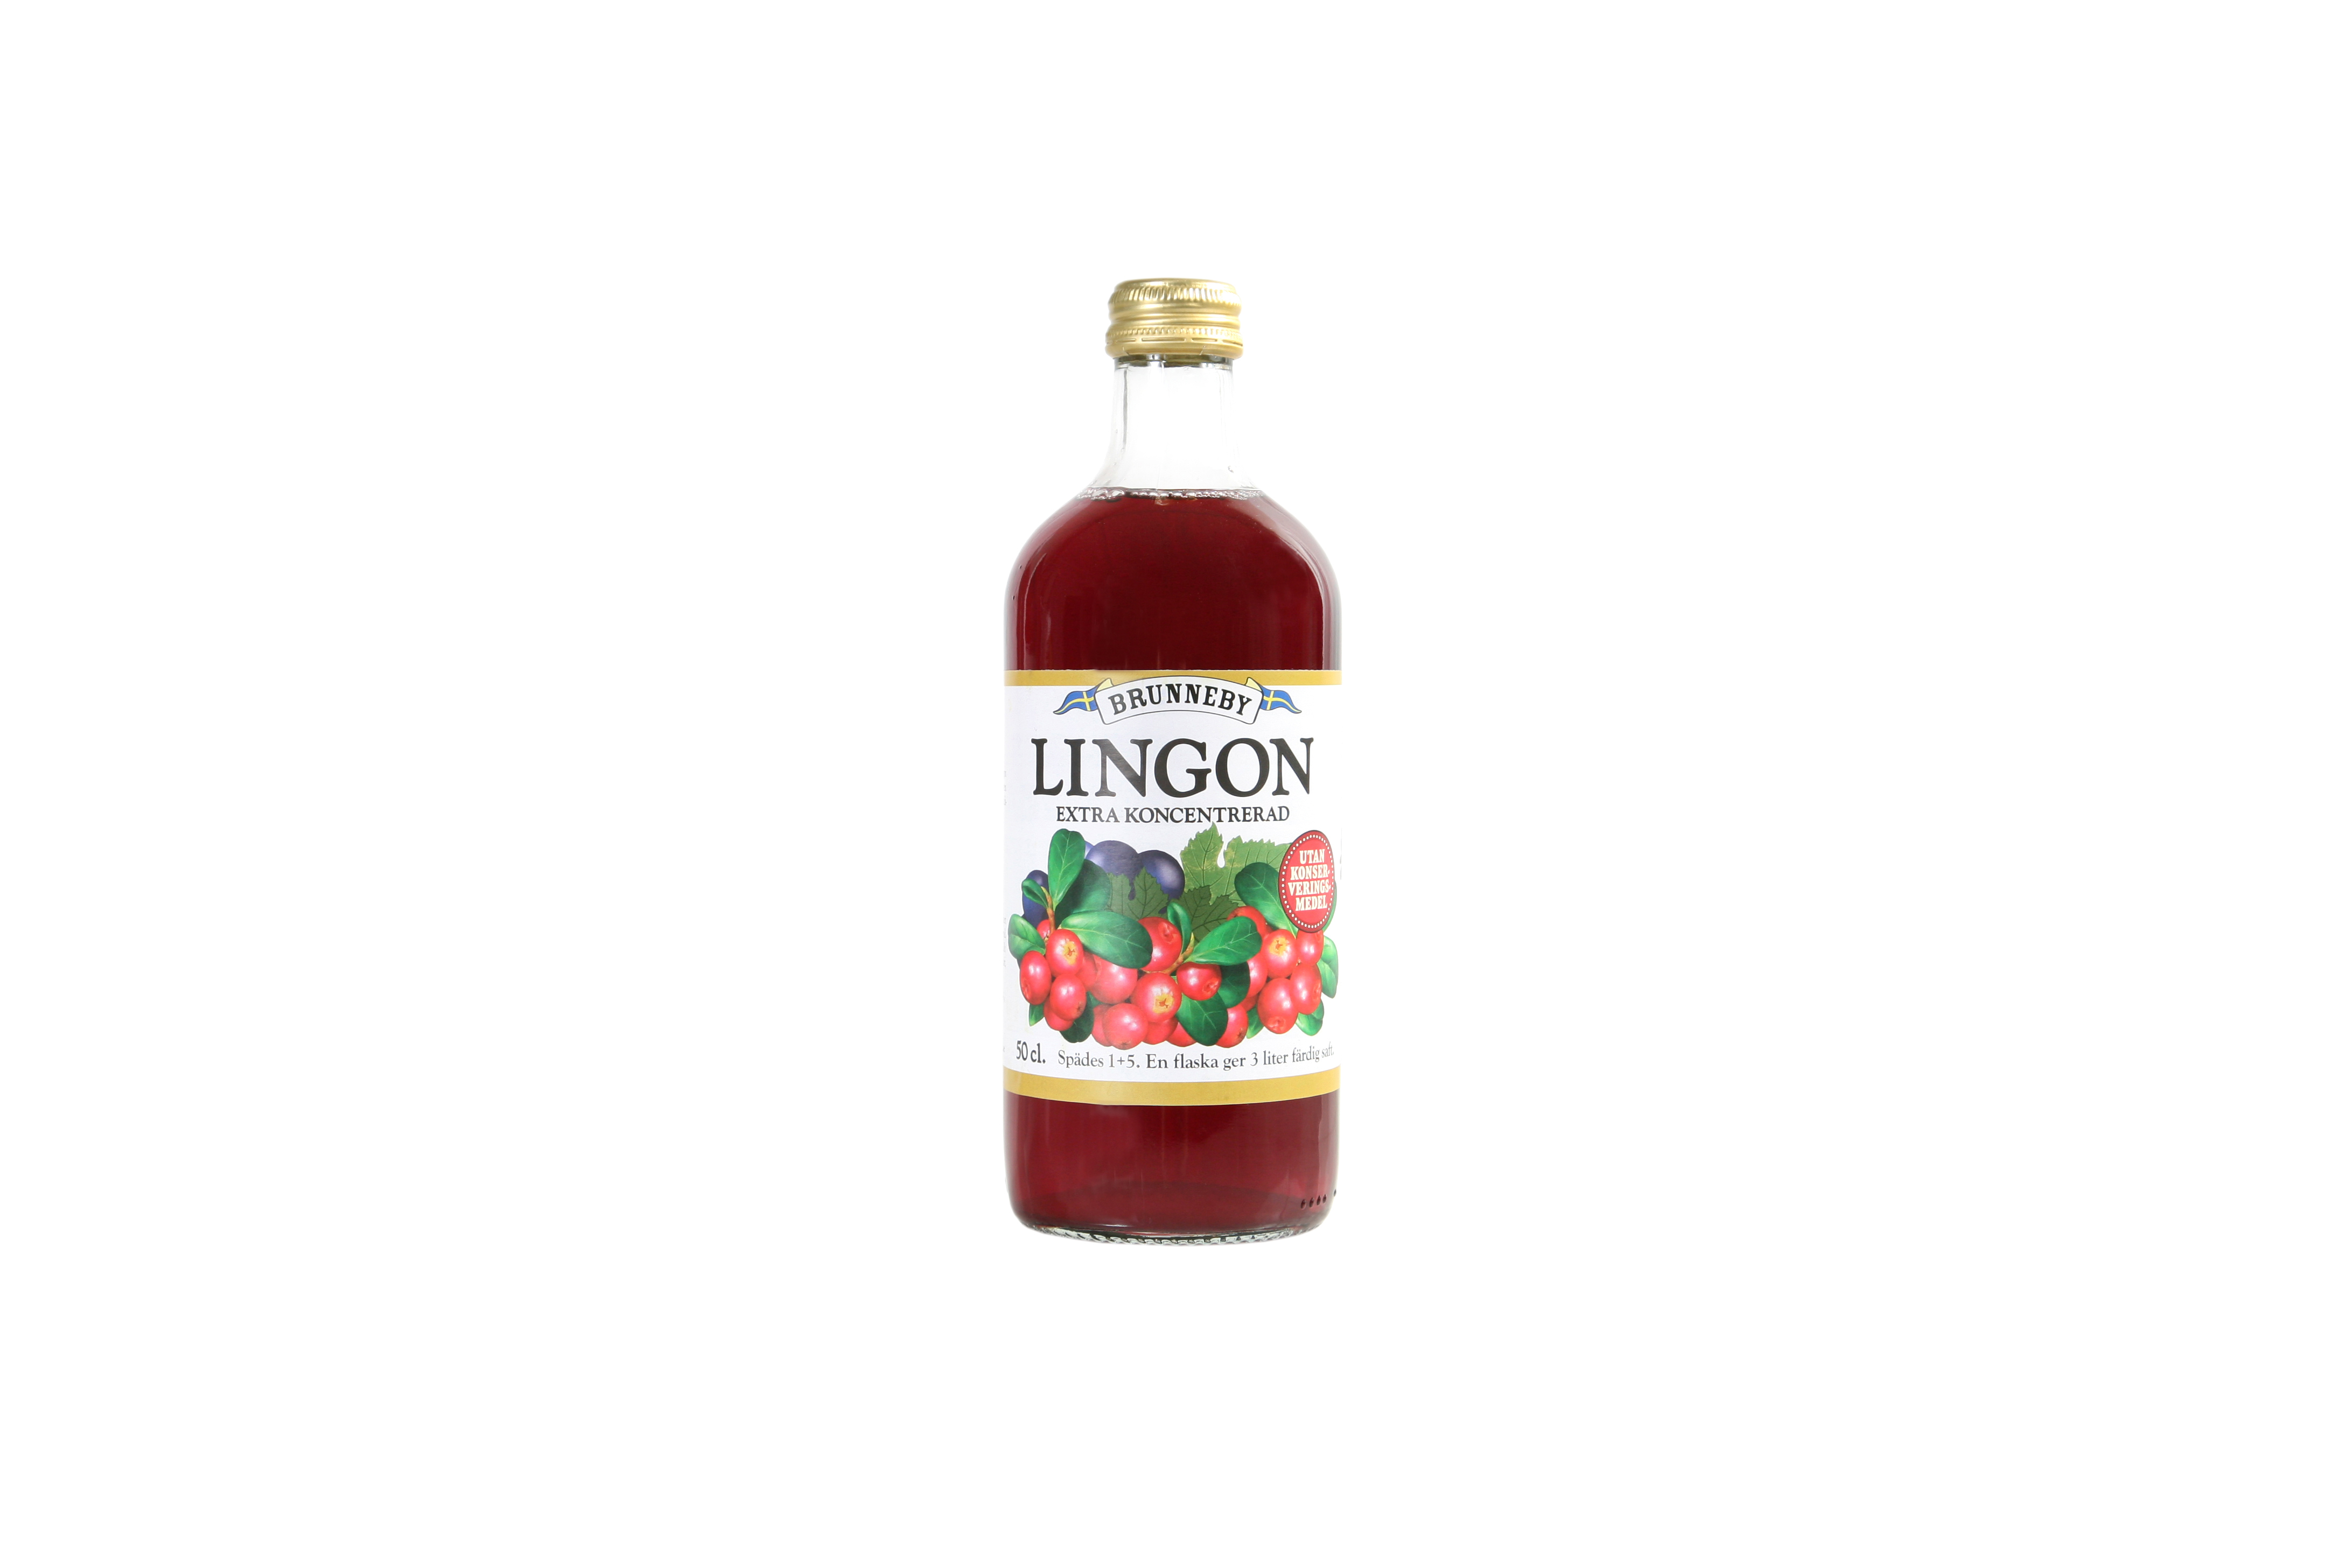 Högupplöst bild på Lingonsaft i 50cl flaska.